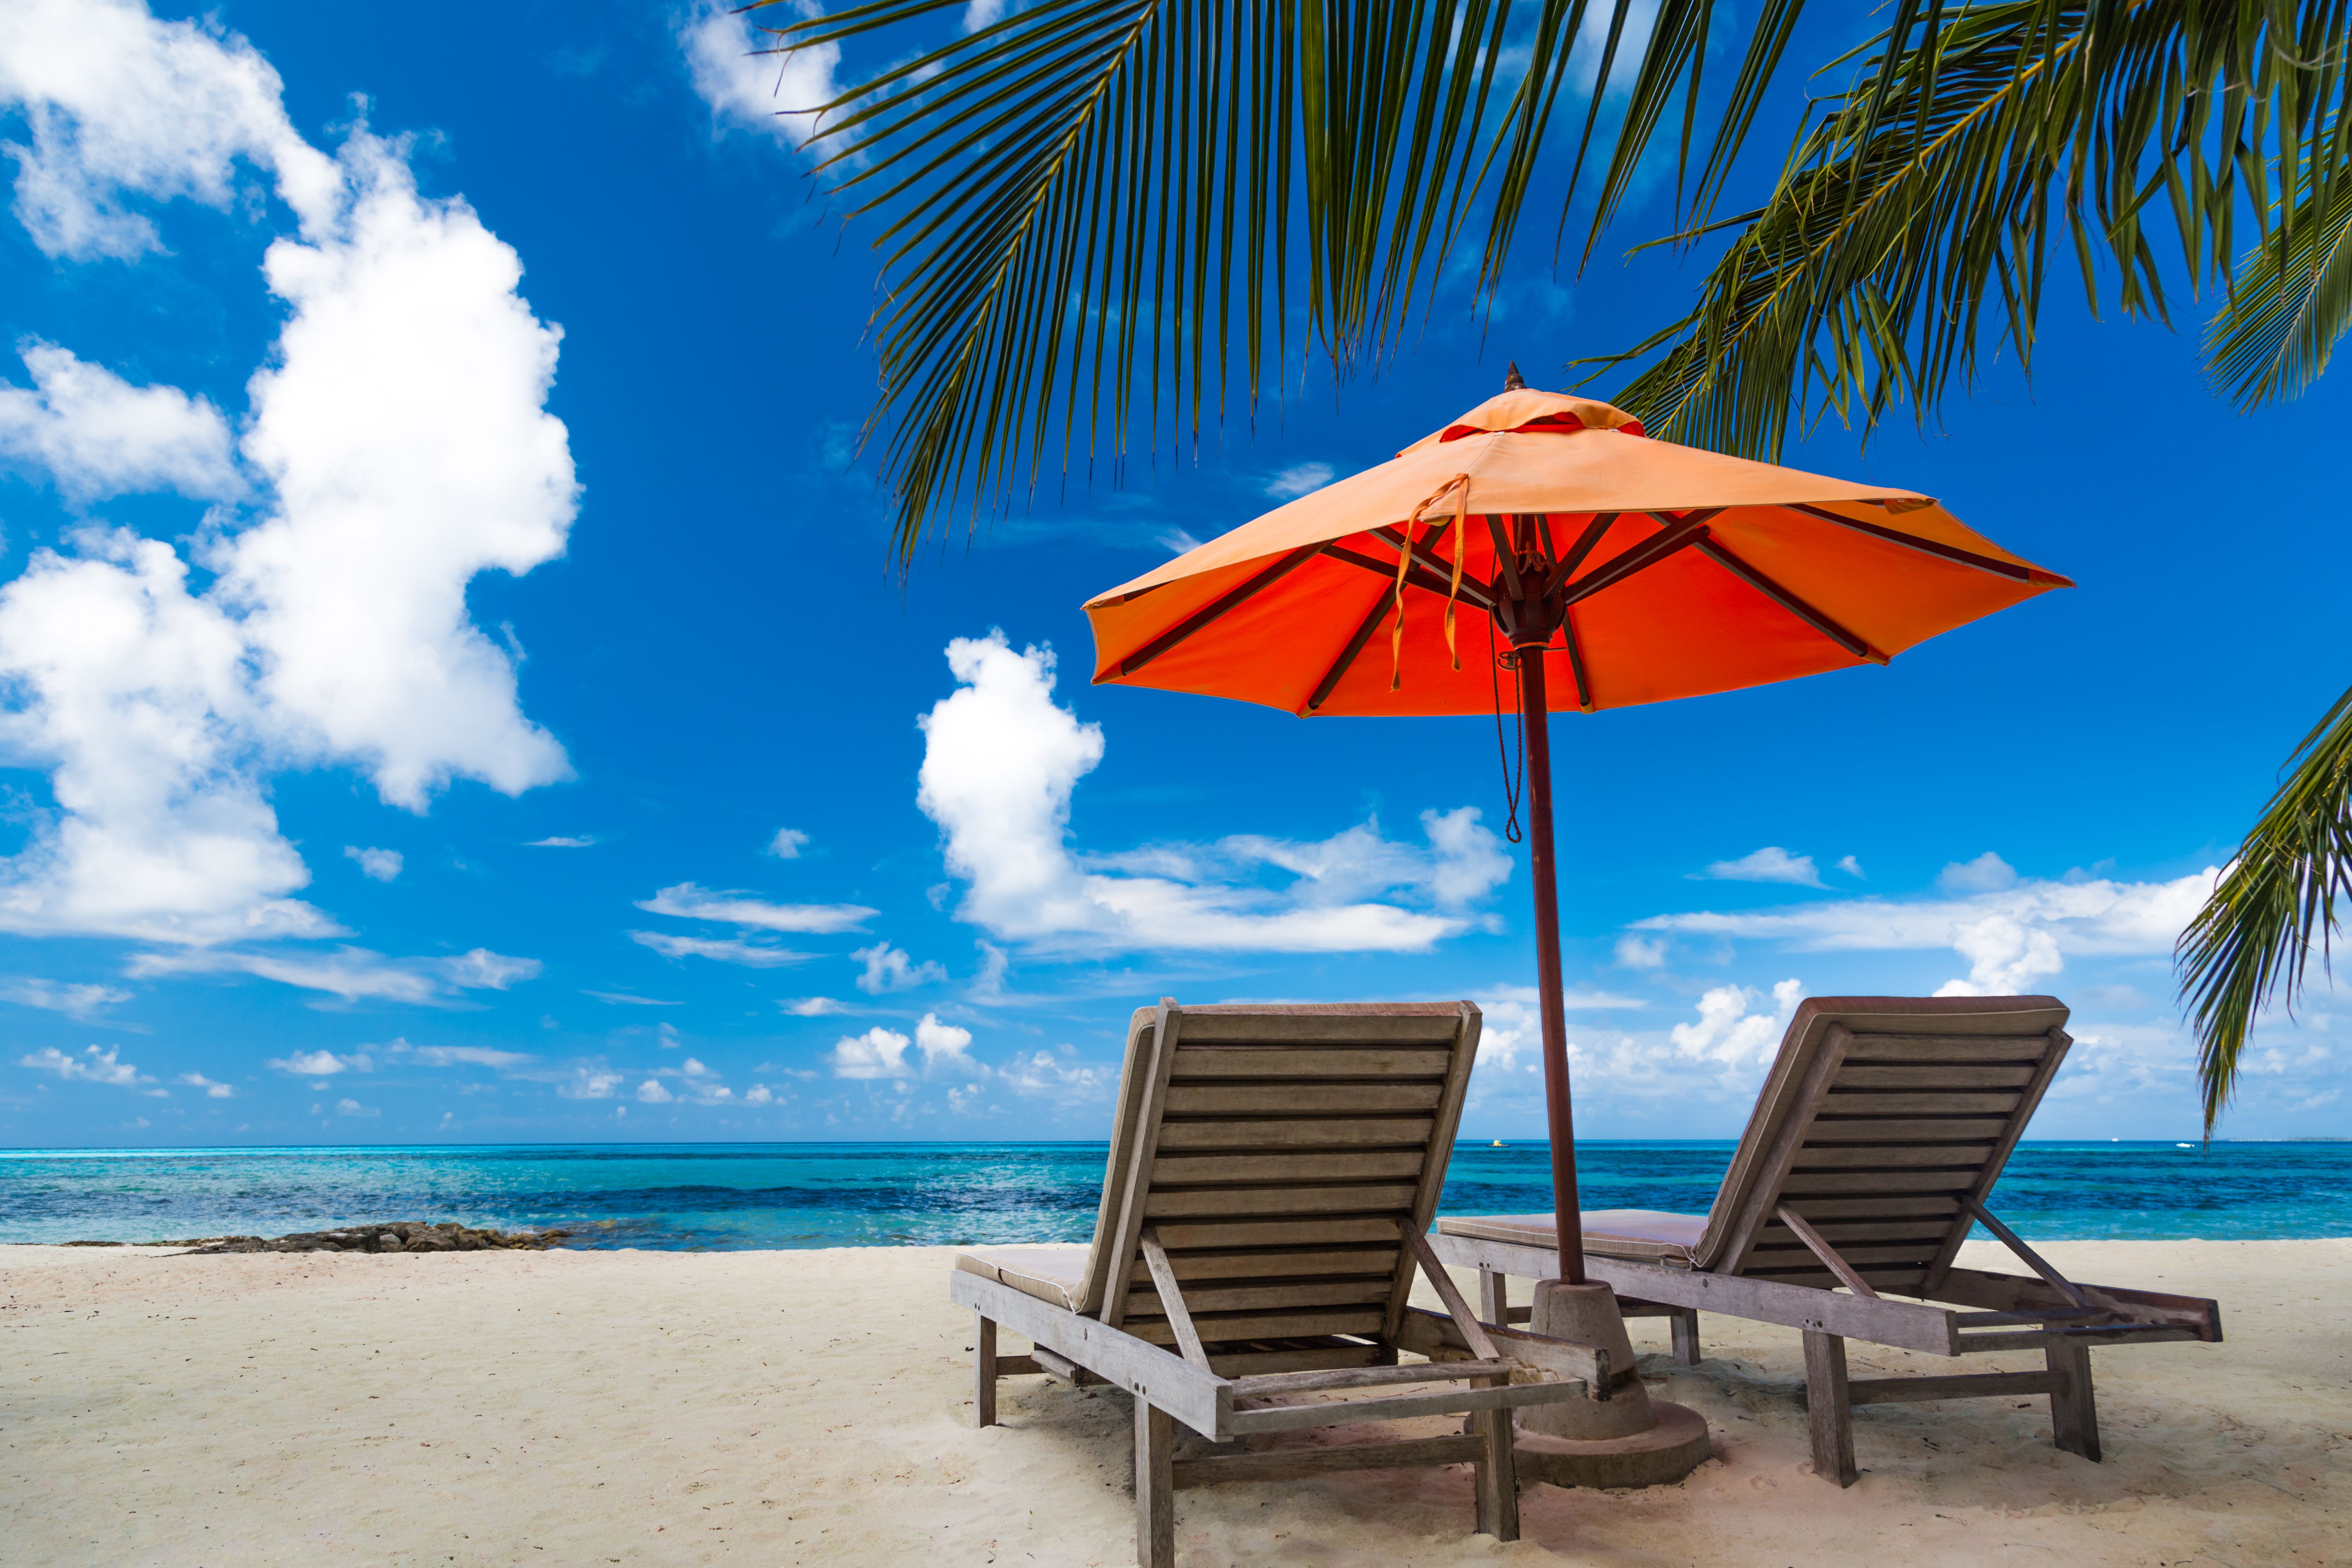 Pozadí nádherné pláže pro letní cestování se sluncem, kokosovou palmou a plážovou dřevěnou postelí na písku s krásným modrým mořem a modrou oblohou.  Letní nálada slunce pláž pozadí konceptu.